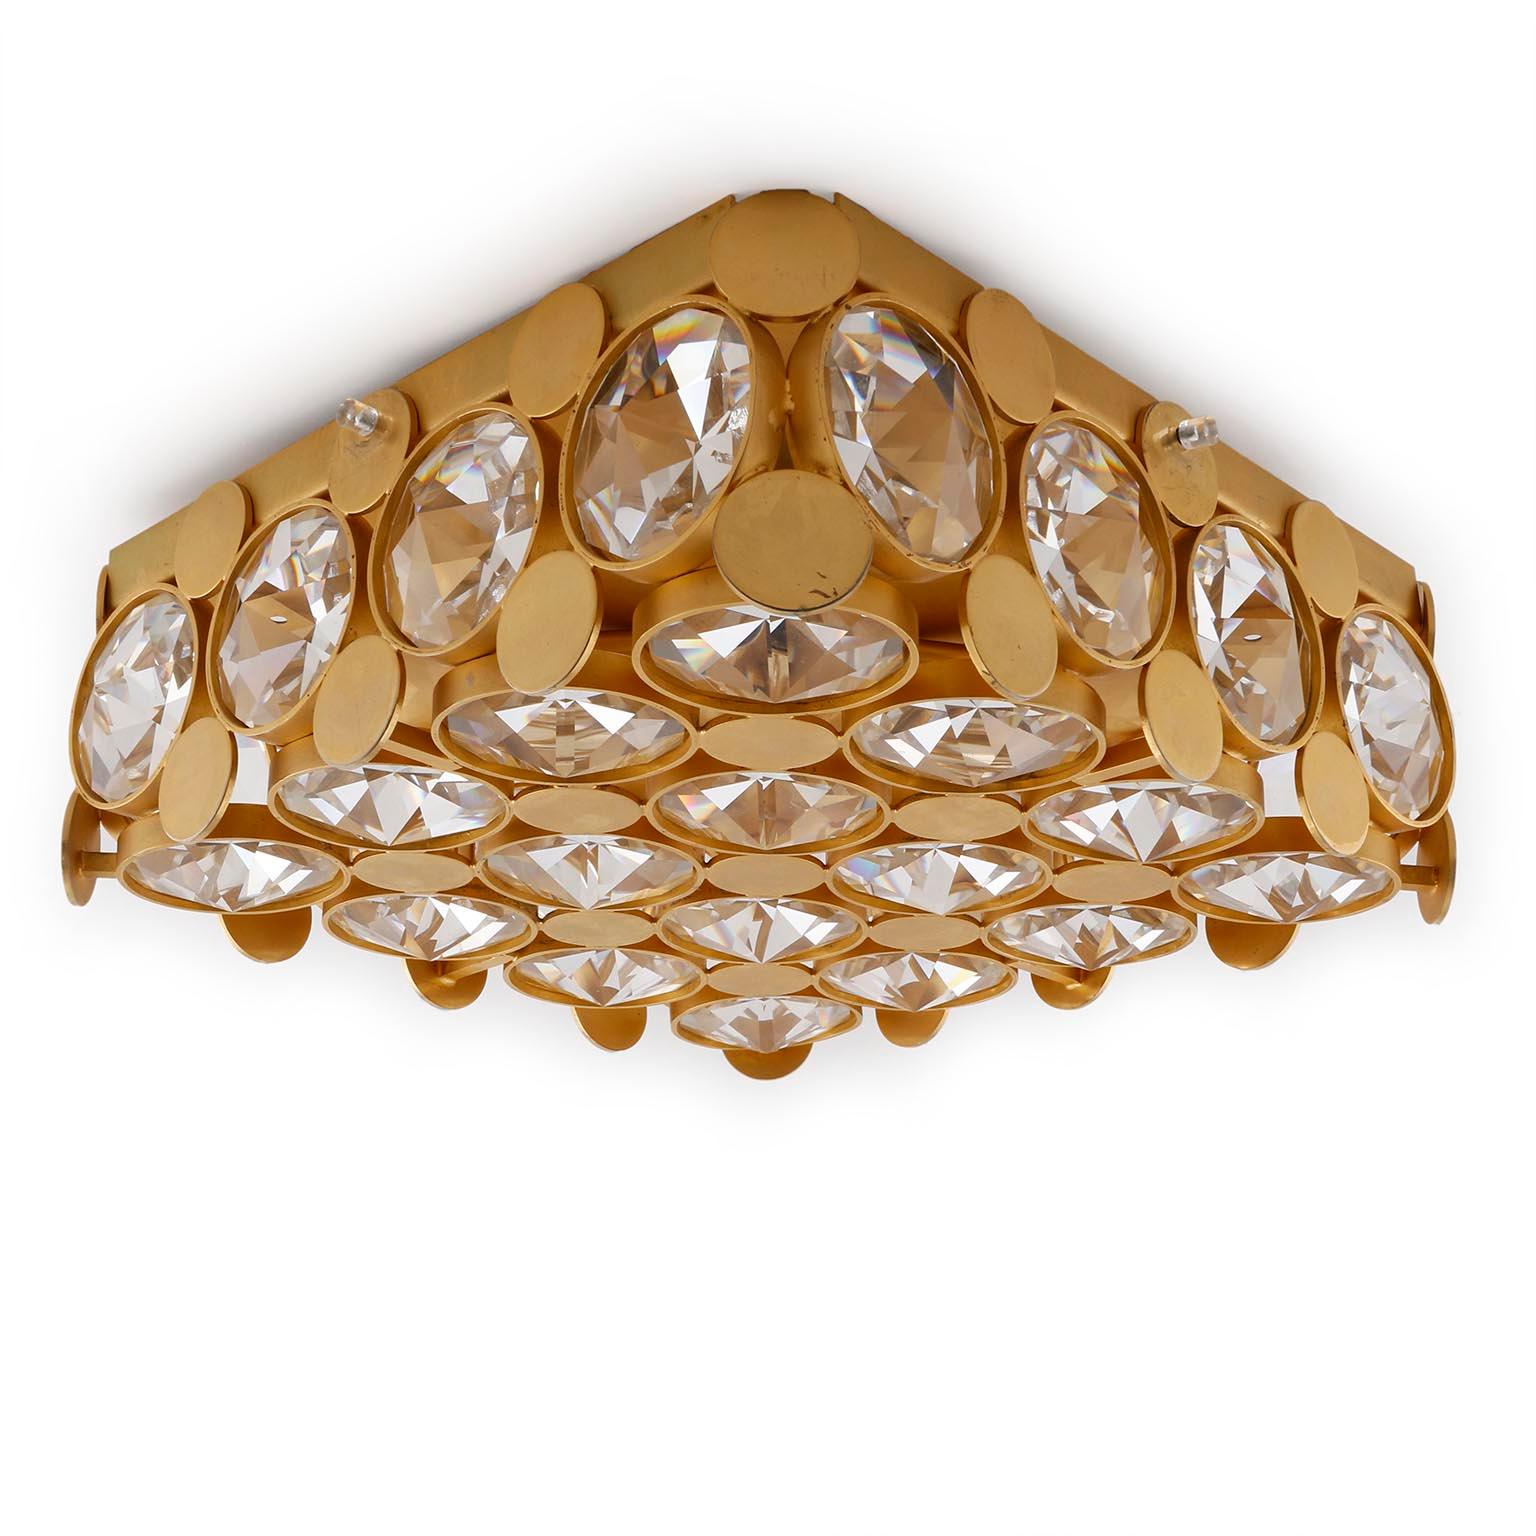 Quadratische Unterputzleuchte von Palwa (Palme & Walter), Deutschland, hergestellt in der Mitte des Jahrhunderts, um 1970 (Ende 1960 oder 1970er Jahre).
Ein vergoldeter Rahmen ist mit rautenförmig geschliffenem Kristallglas verziert. Die vergoldete